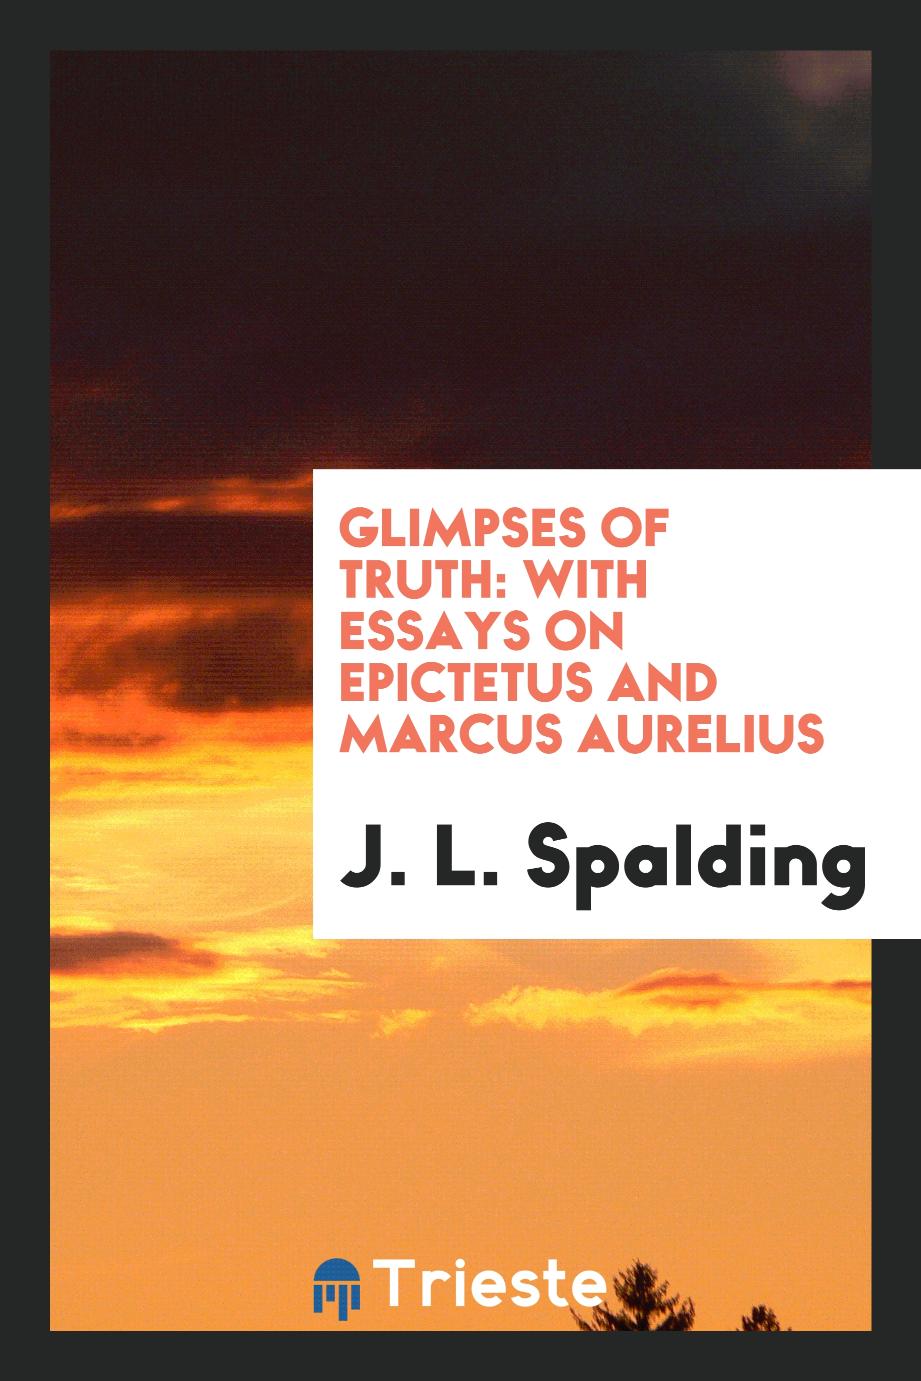 Glimpses of truth: with essays on Epictetus and Marcus Aurelius